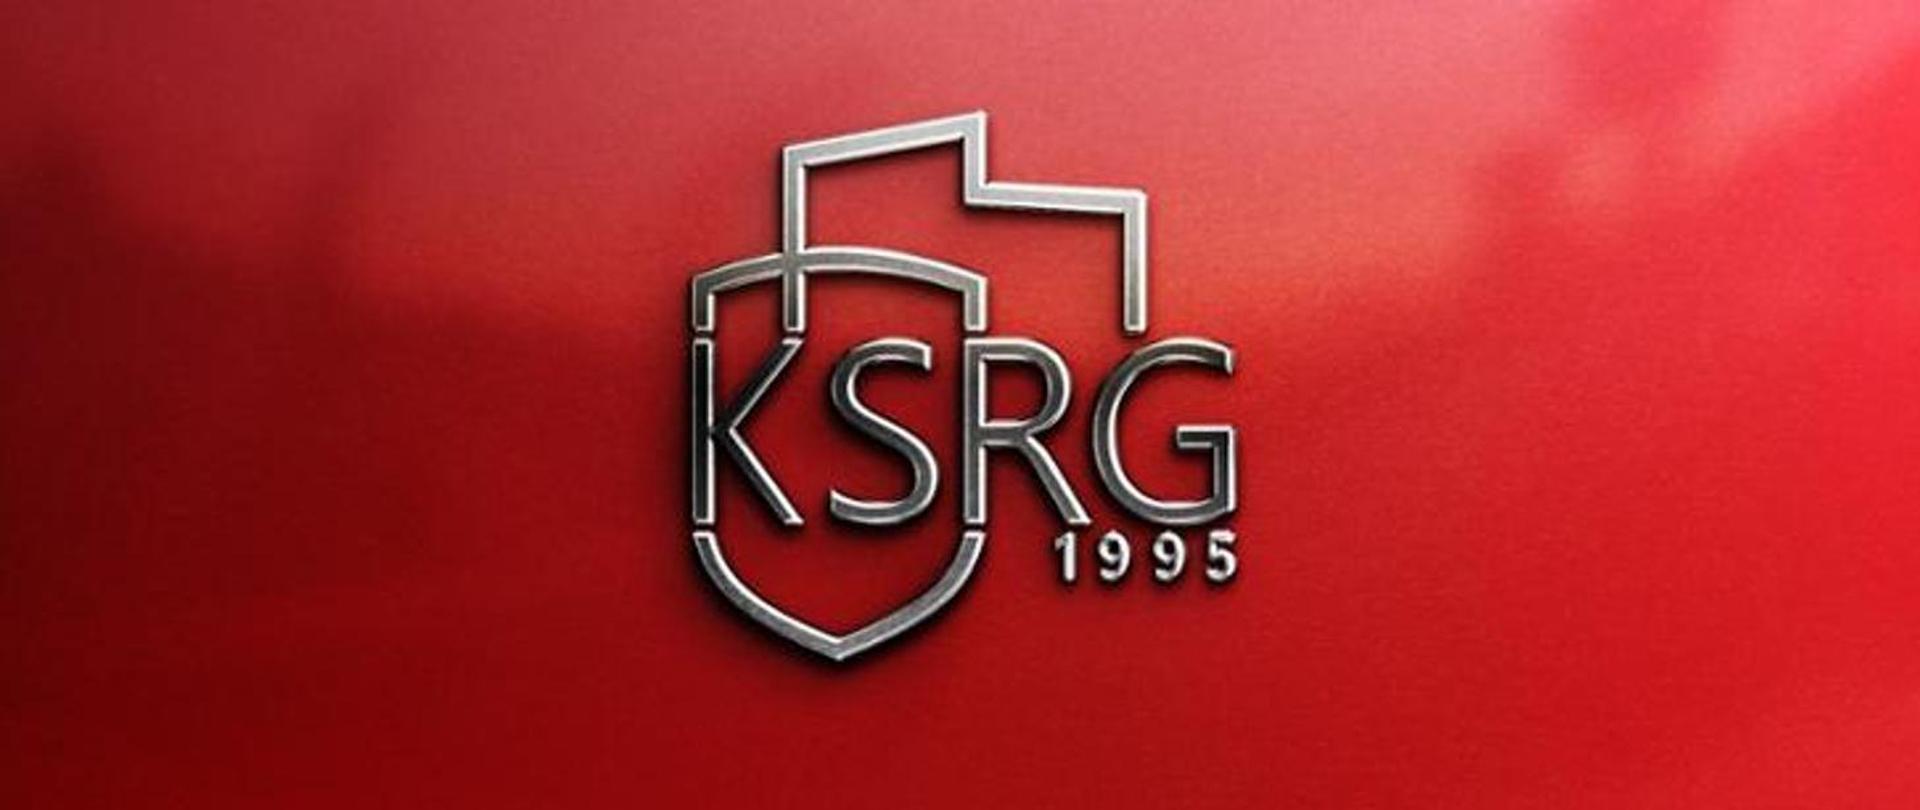 Logotyp KSRG